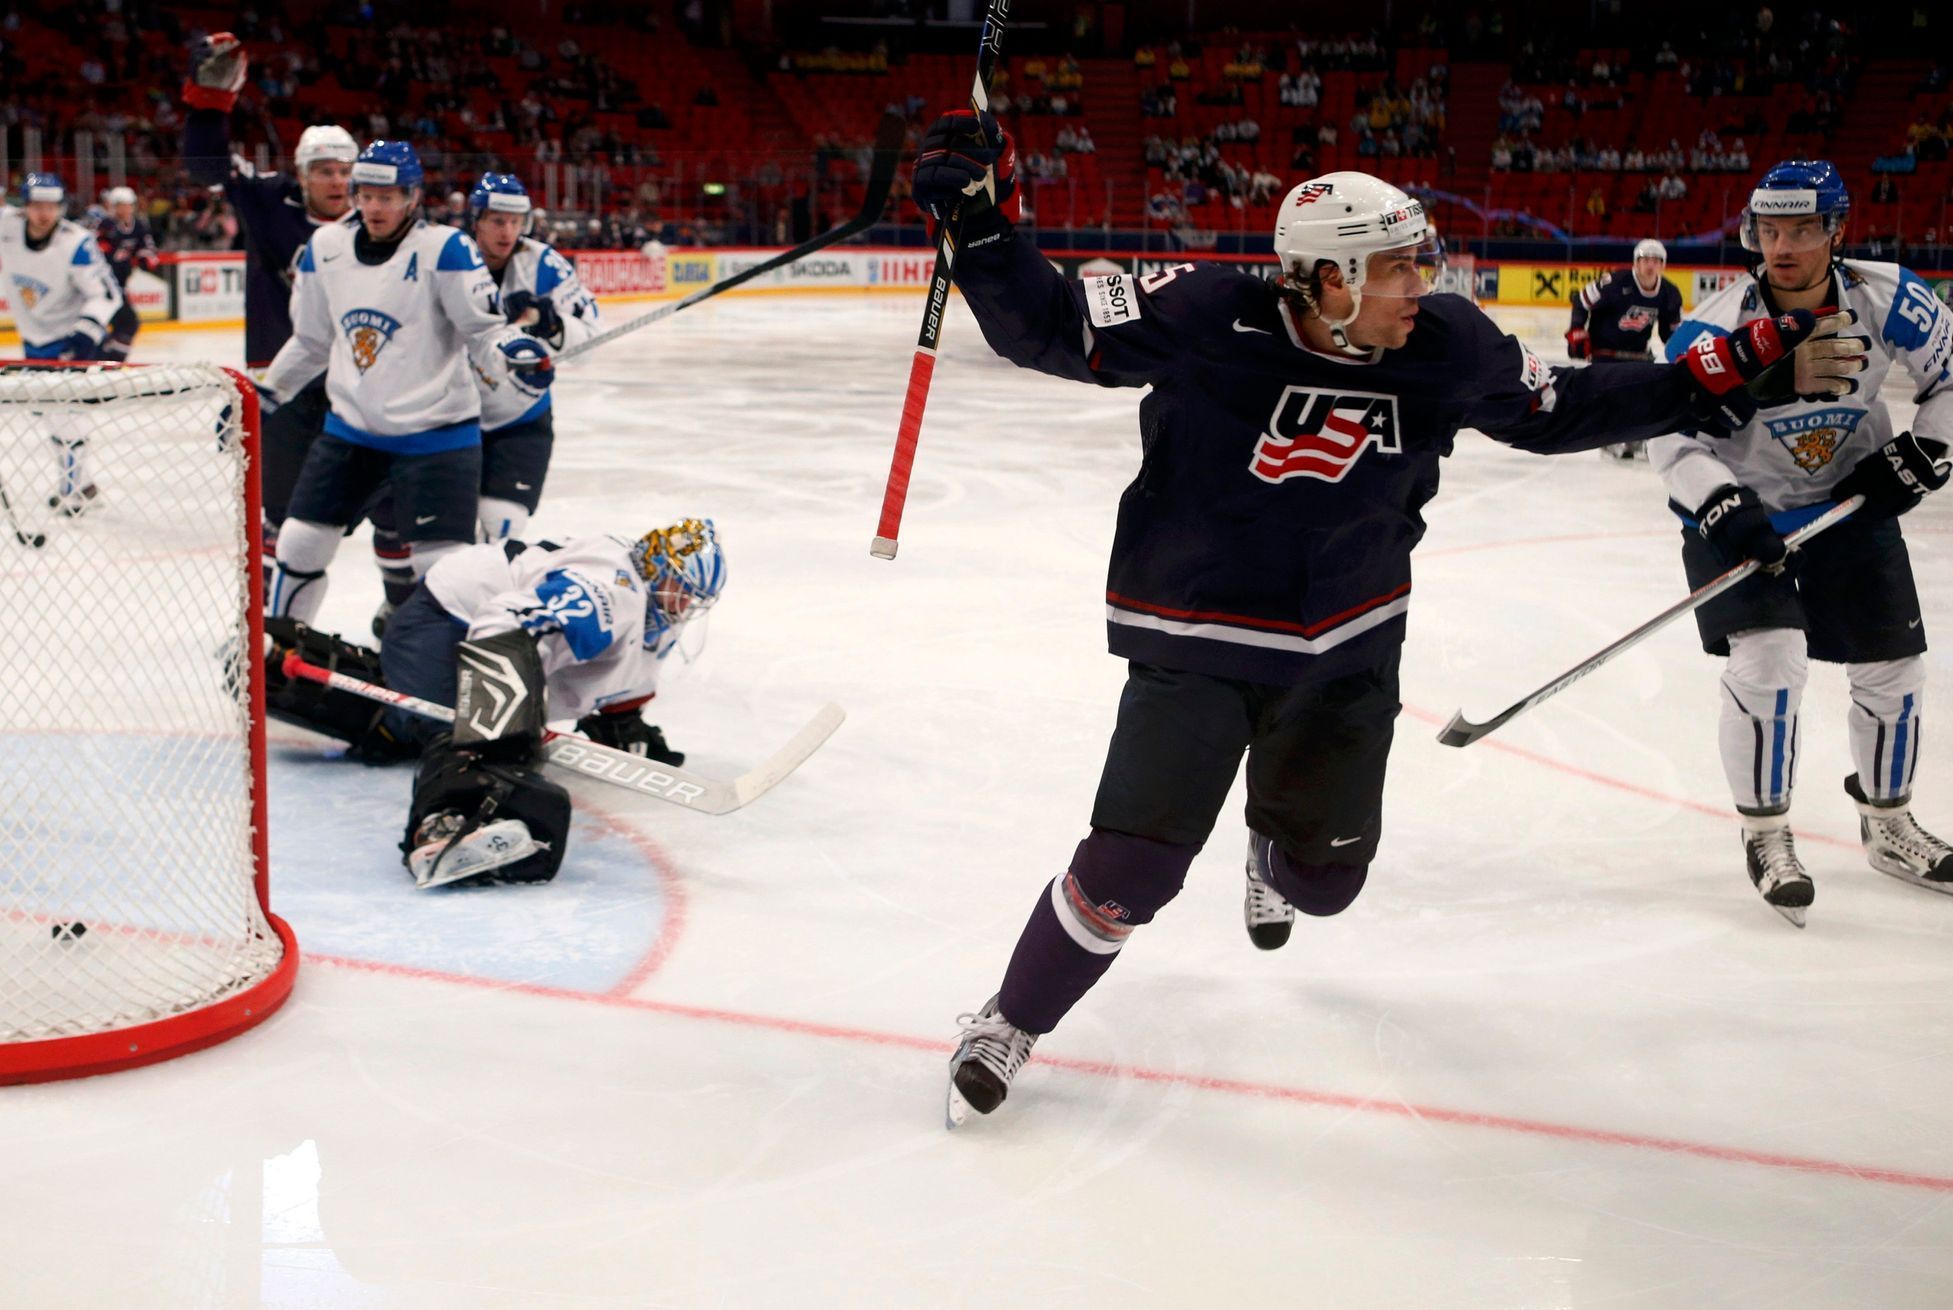 Hokej, MS 2013, USA - Finsko: Craig Smith (15) slaví gól na 1:0